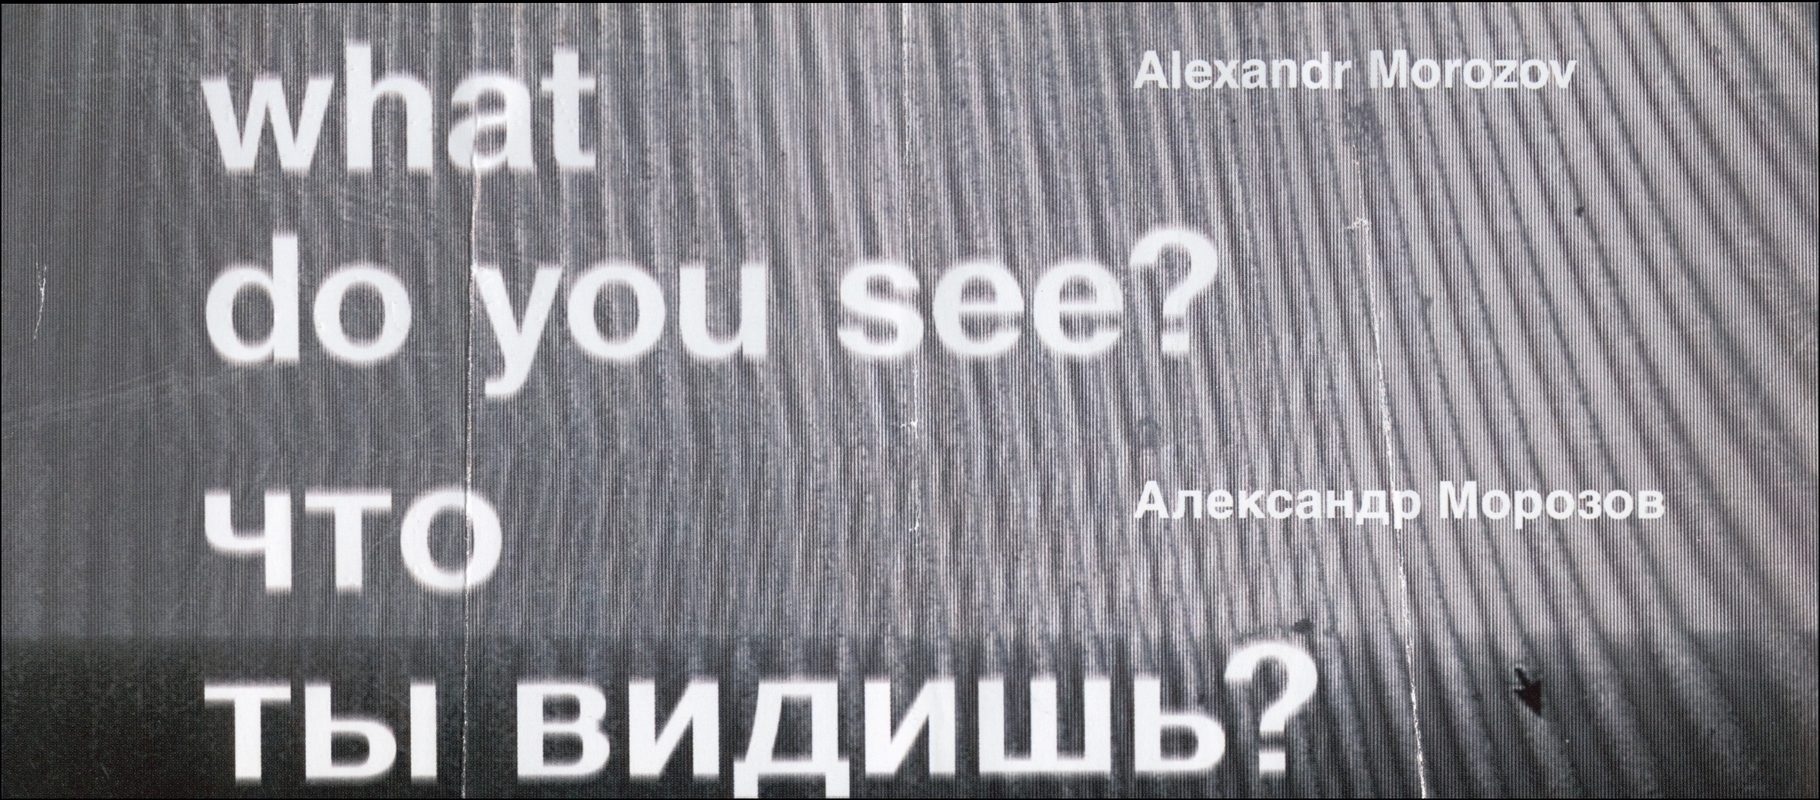 Александр Морозов. Что ты видишь?